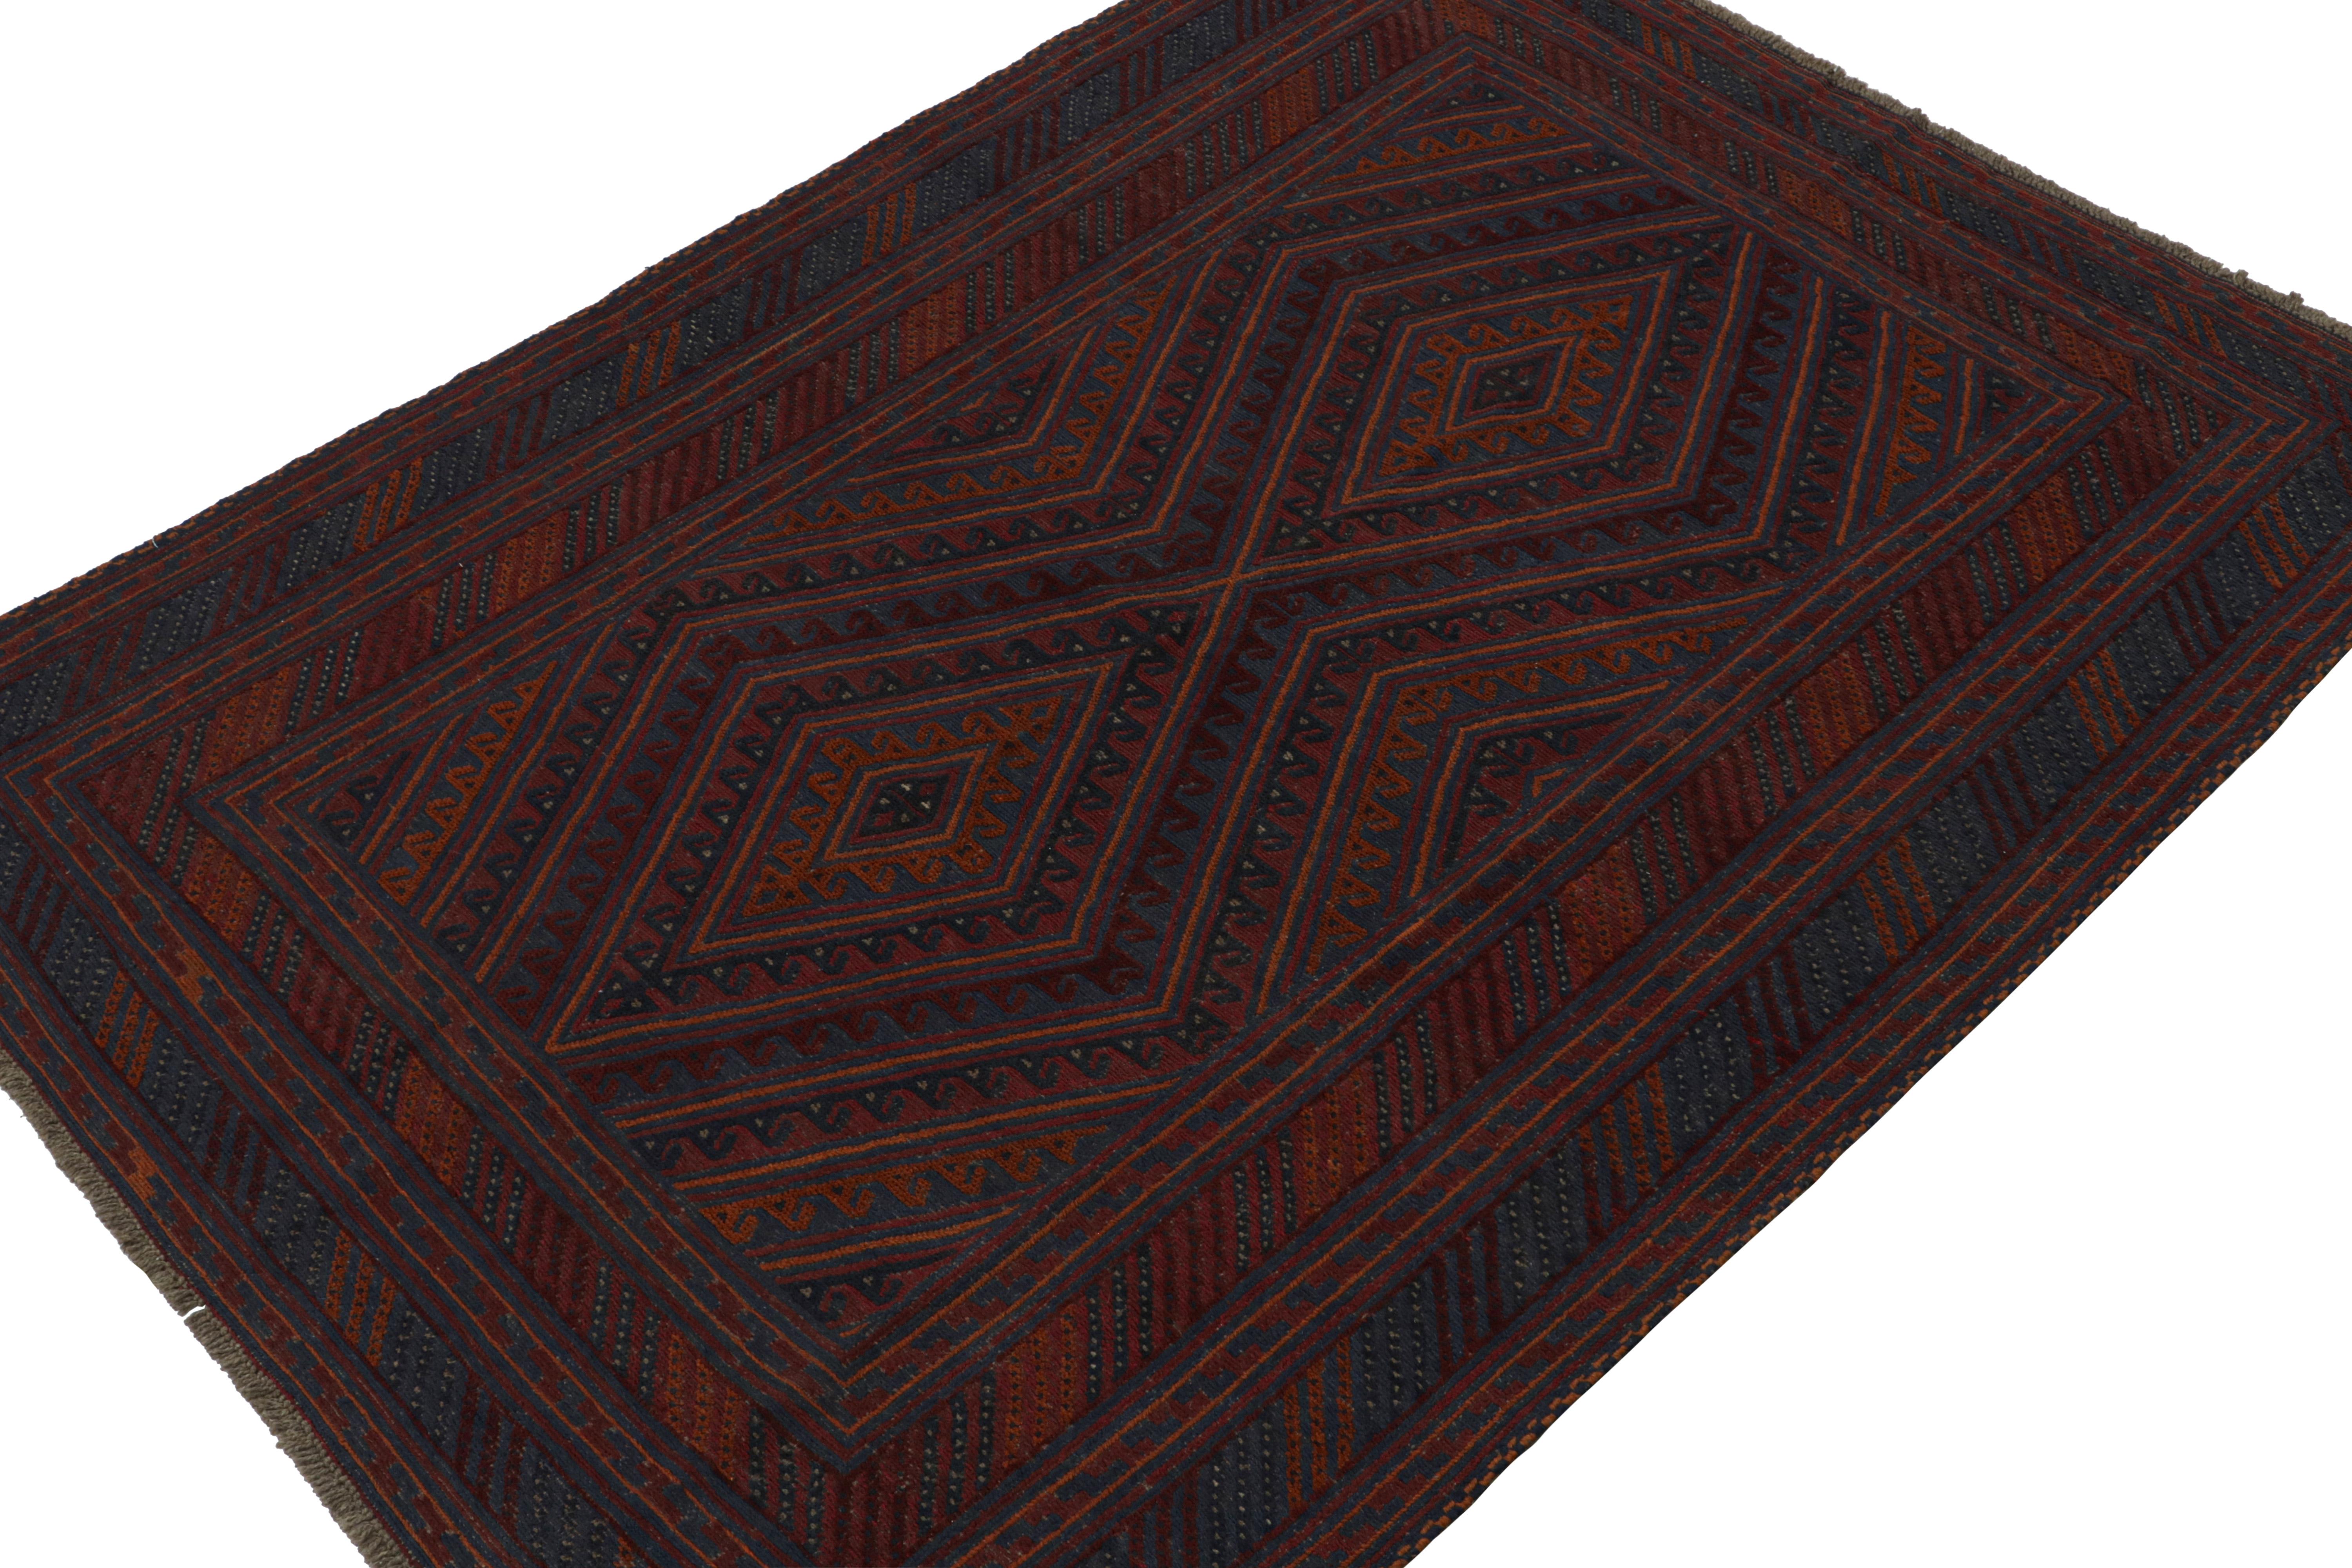 Noué à la main en laine vers 1950-1960, ce tapis afghan vintage 7x9 des années 1950 est une nouvelle collection de Rug & Kilim.

Sur le Design : 

Cette pièce est un tapis tribal Mashwani vintage provenant d'une tribu arabe du même nom. Les tapis